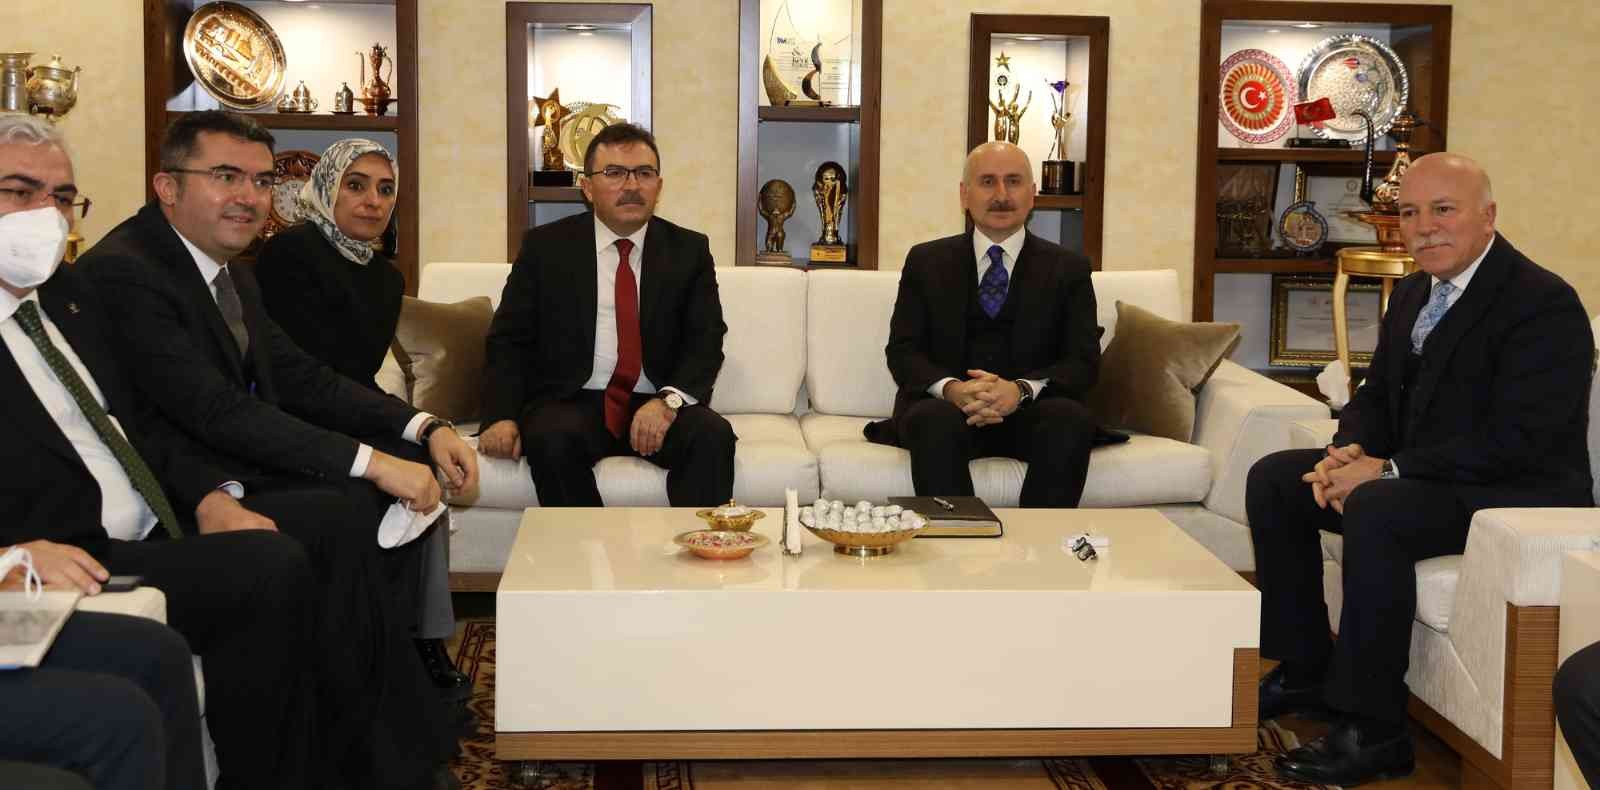 Ulaştırma ve Altyapı Bakanı Karaismailoğlu’ndan Büyükşehir’e ziyaret #erzurum